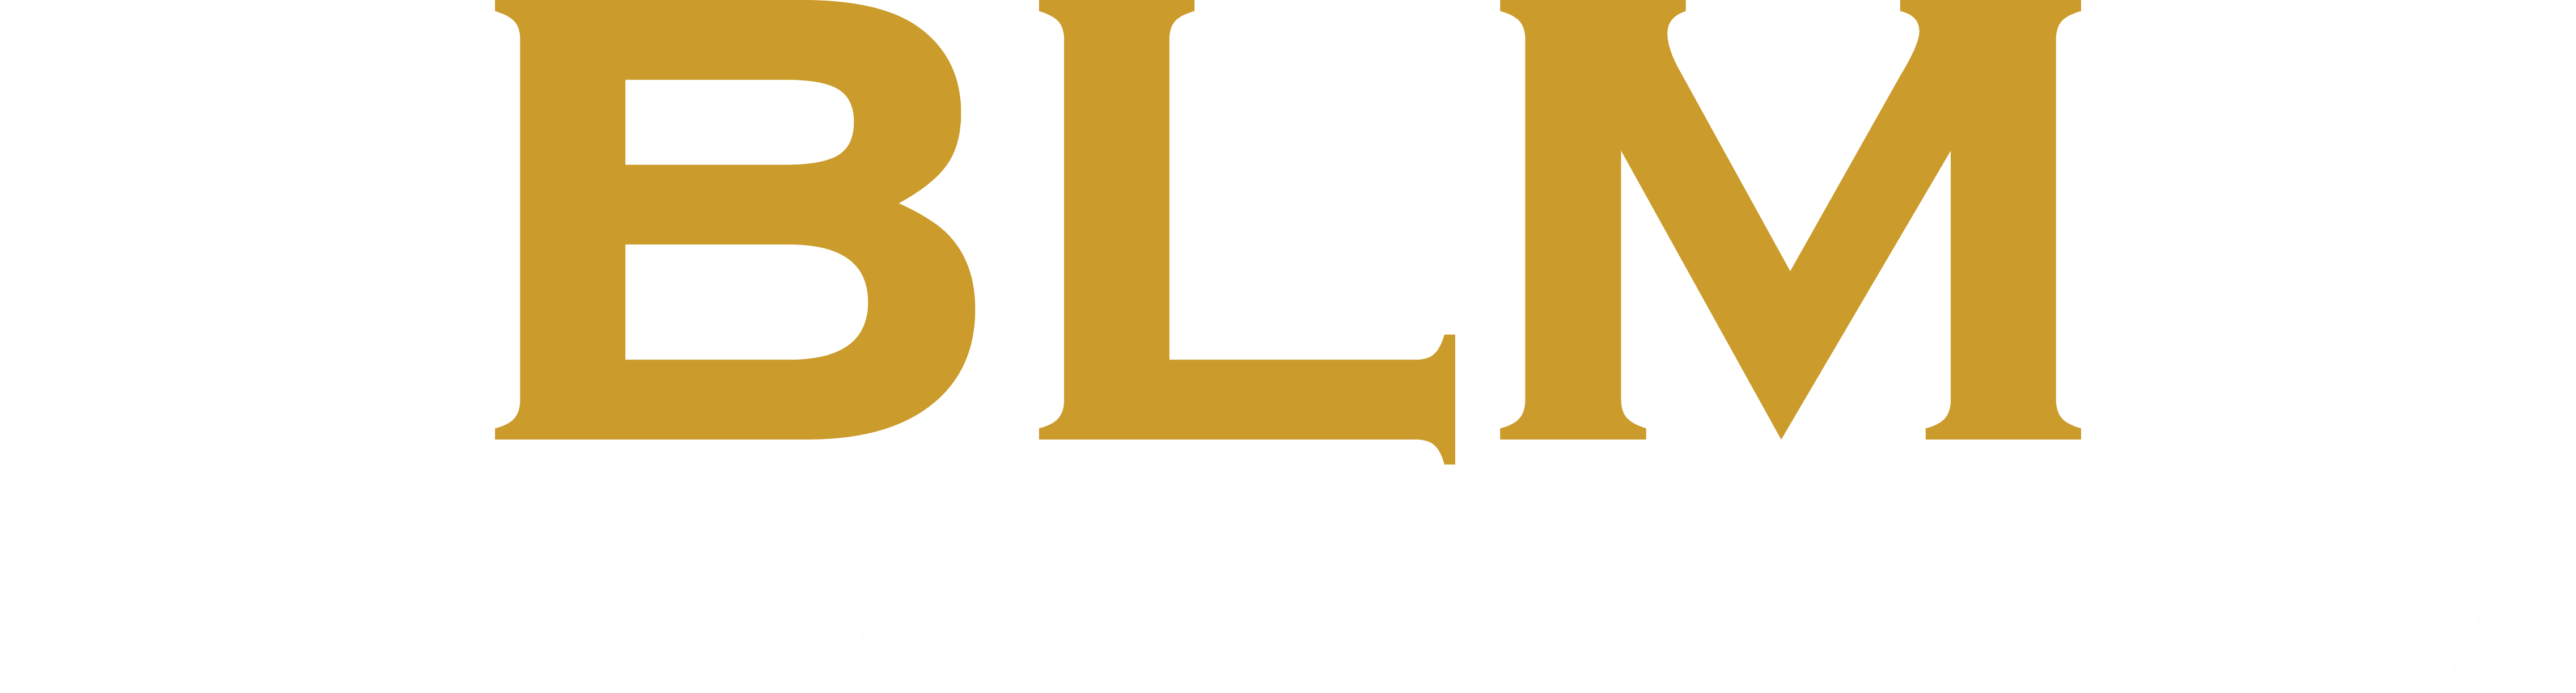 Black Label Multimedia Logo